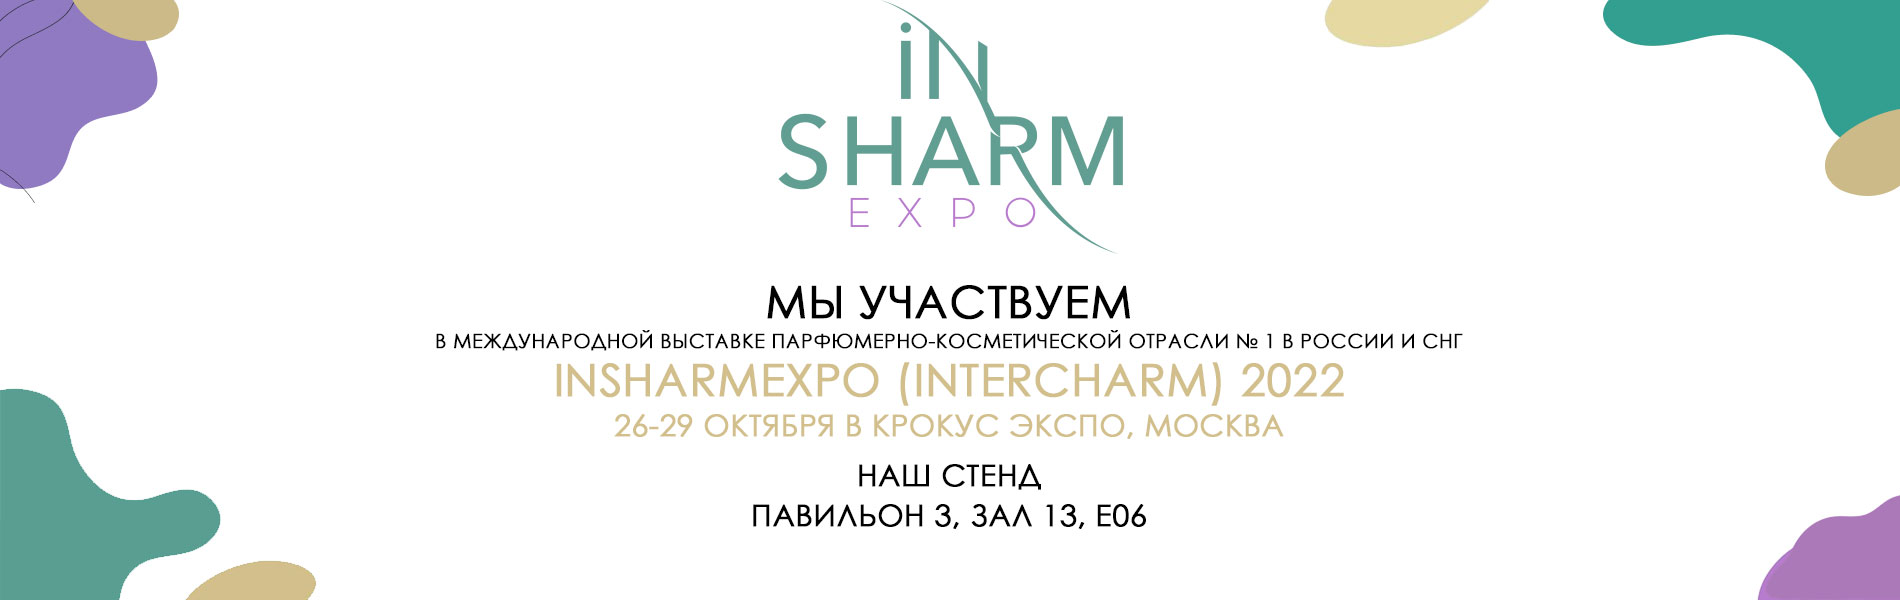 Международной выставке парфюмерно-косметической отрасли № 1 в России и СНГ – InSharmExpo (InterCHARM) - 26-29 октября в Крокус Экспо, Москва!